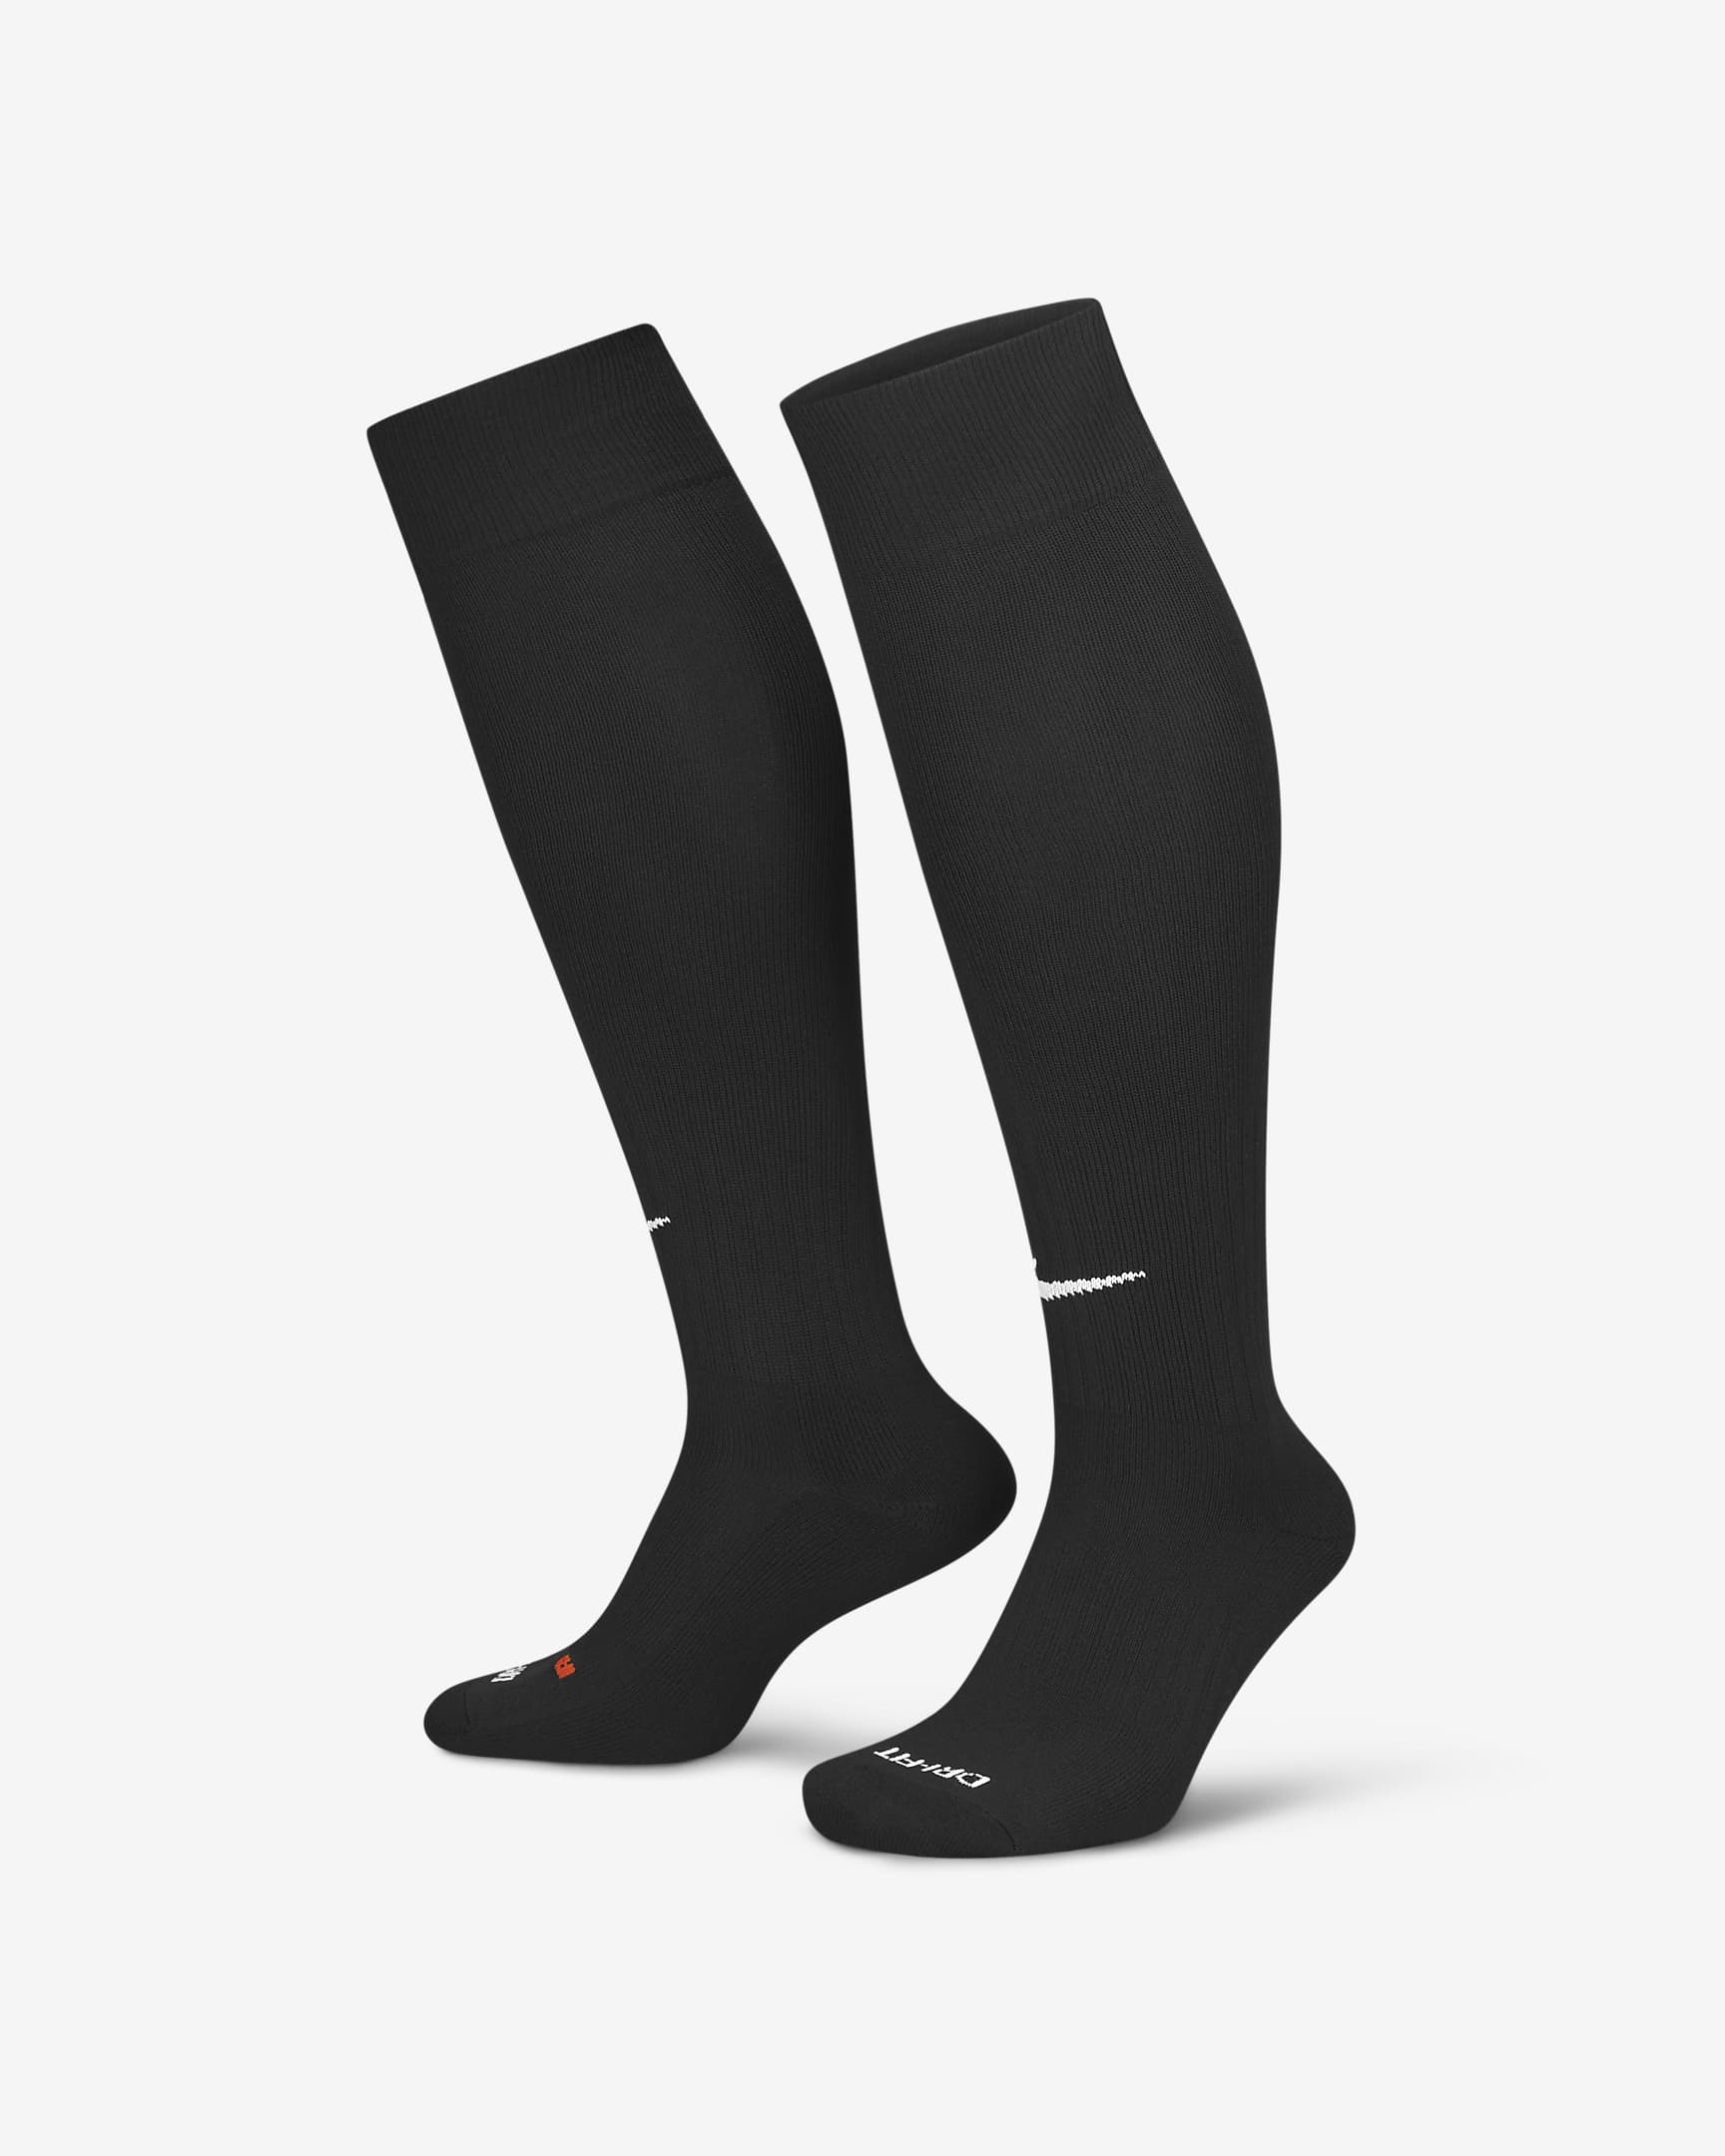 Nike Classic 2 Cushioned Over-the-Calf Socks. Nike RO